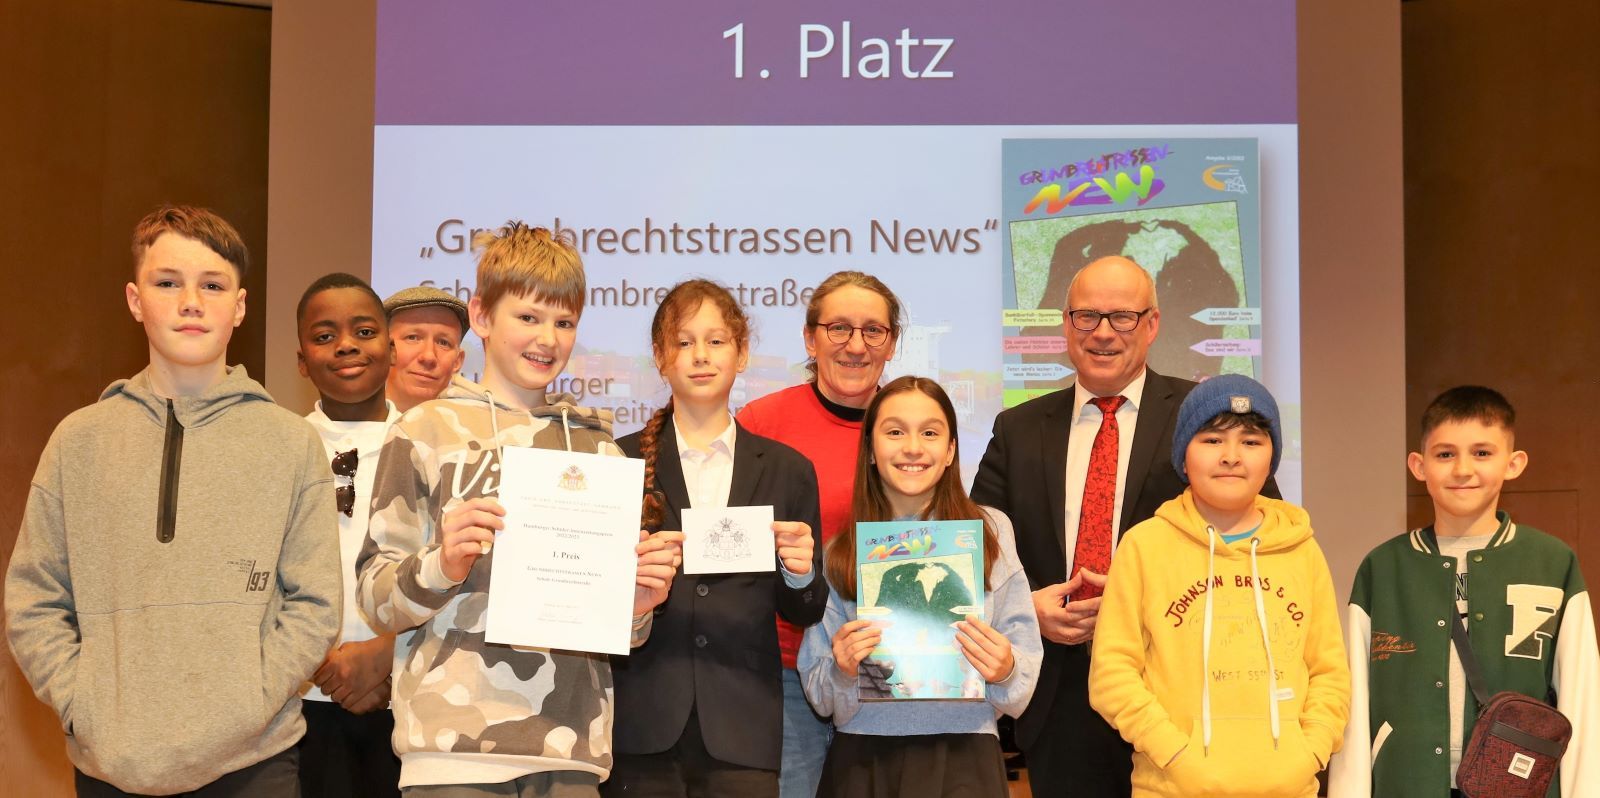 Das Redaktionsteam der Grumbrechtstraßen News wird von Schulsenator Ties Rabe ausgezeichnet. Foto: Christian Bittcher